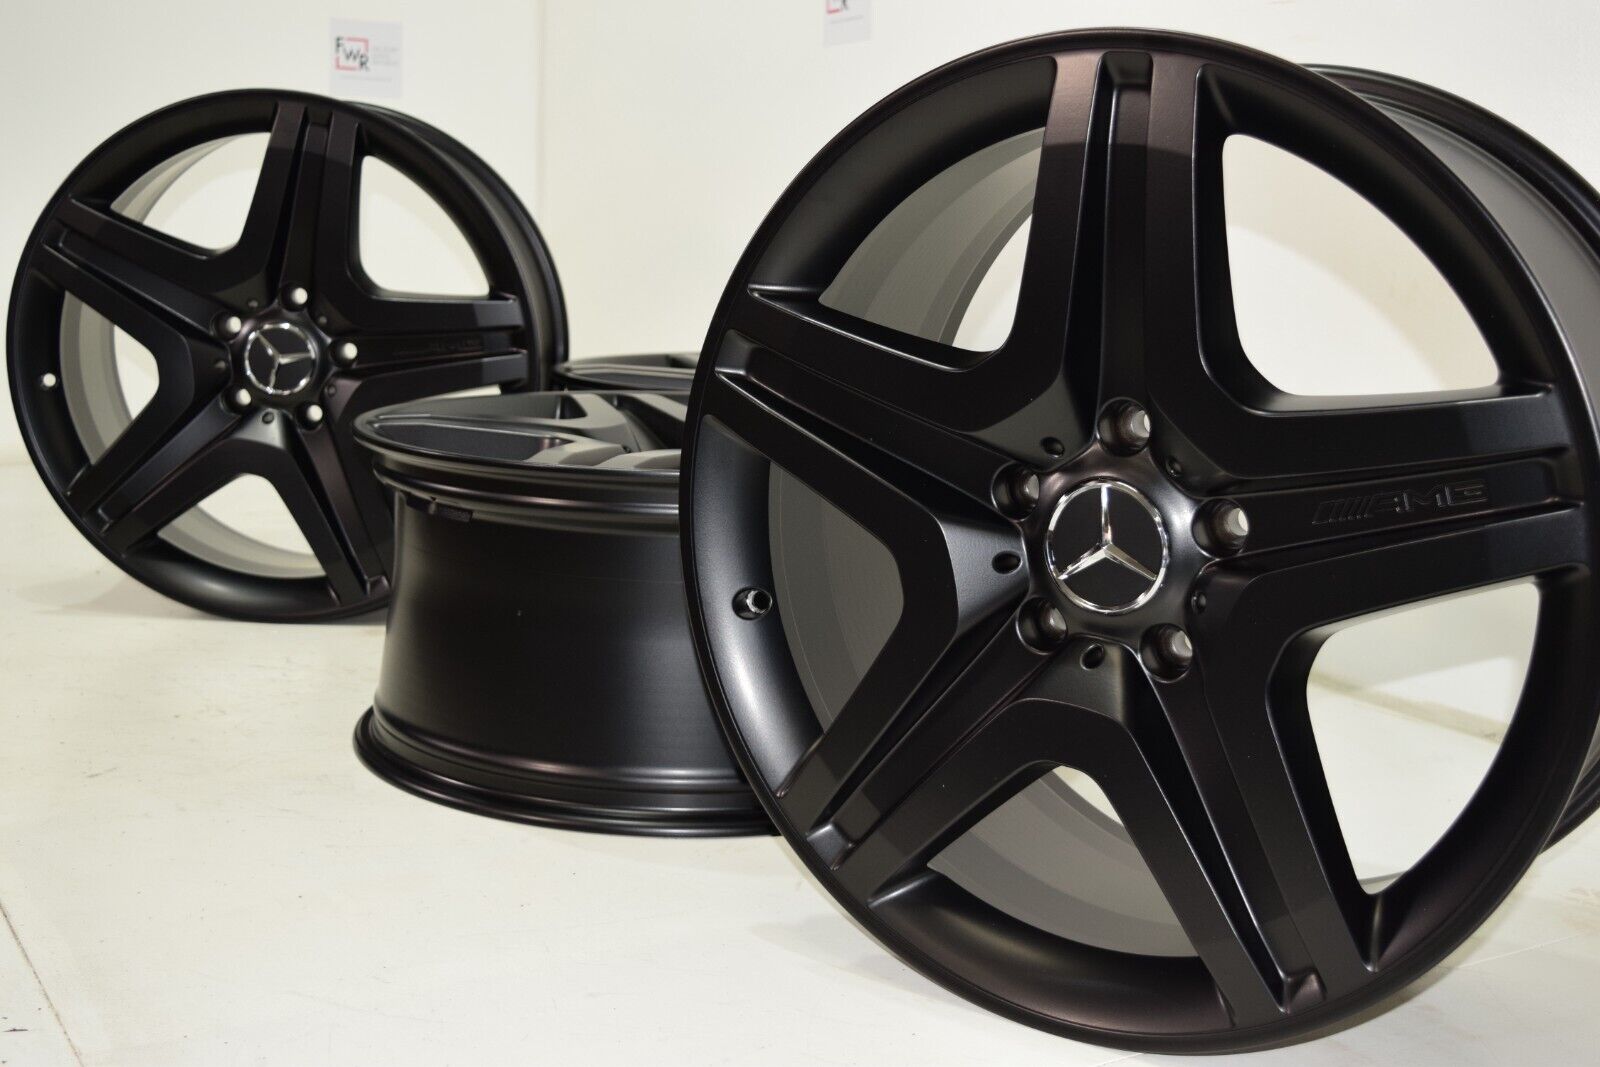 20″ MERCEDES G63 G550 G500 RIMS BLACK Factory OEM Authentic wheels rims 2018